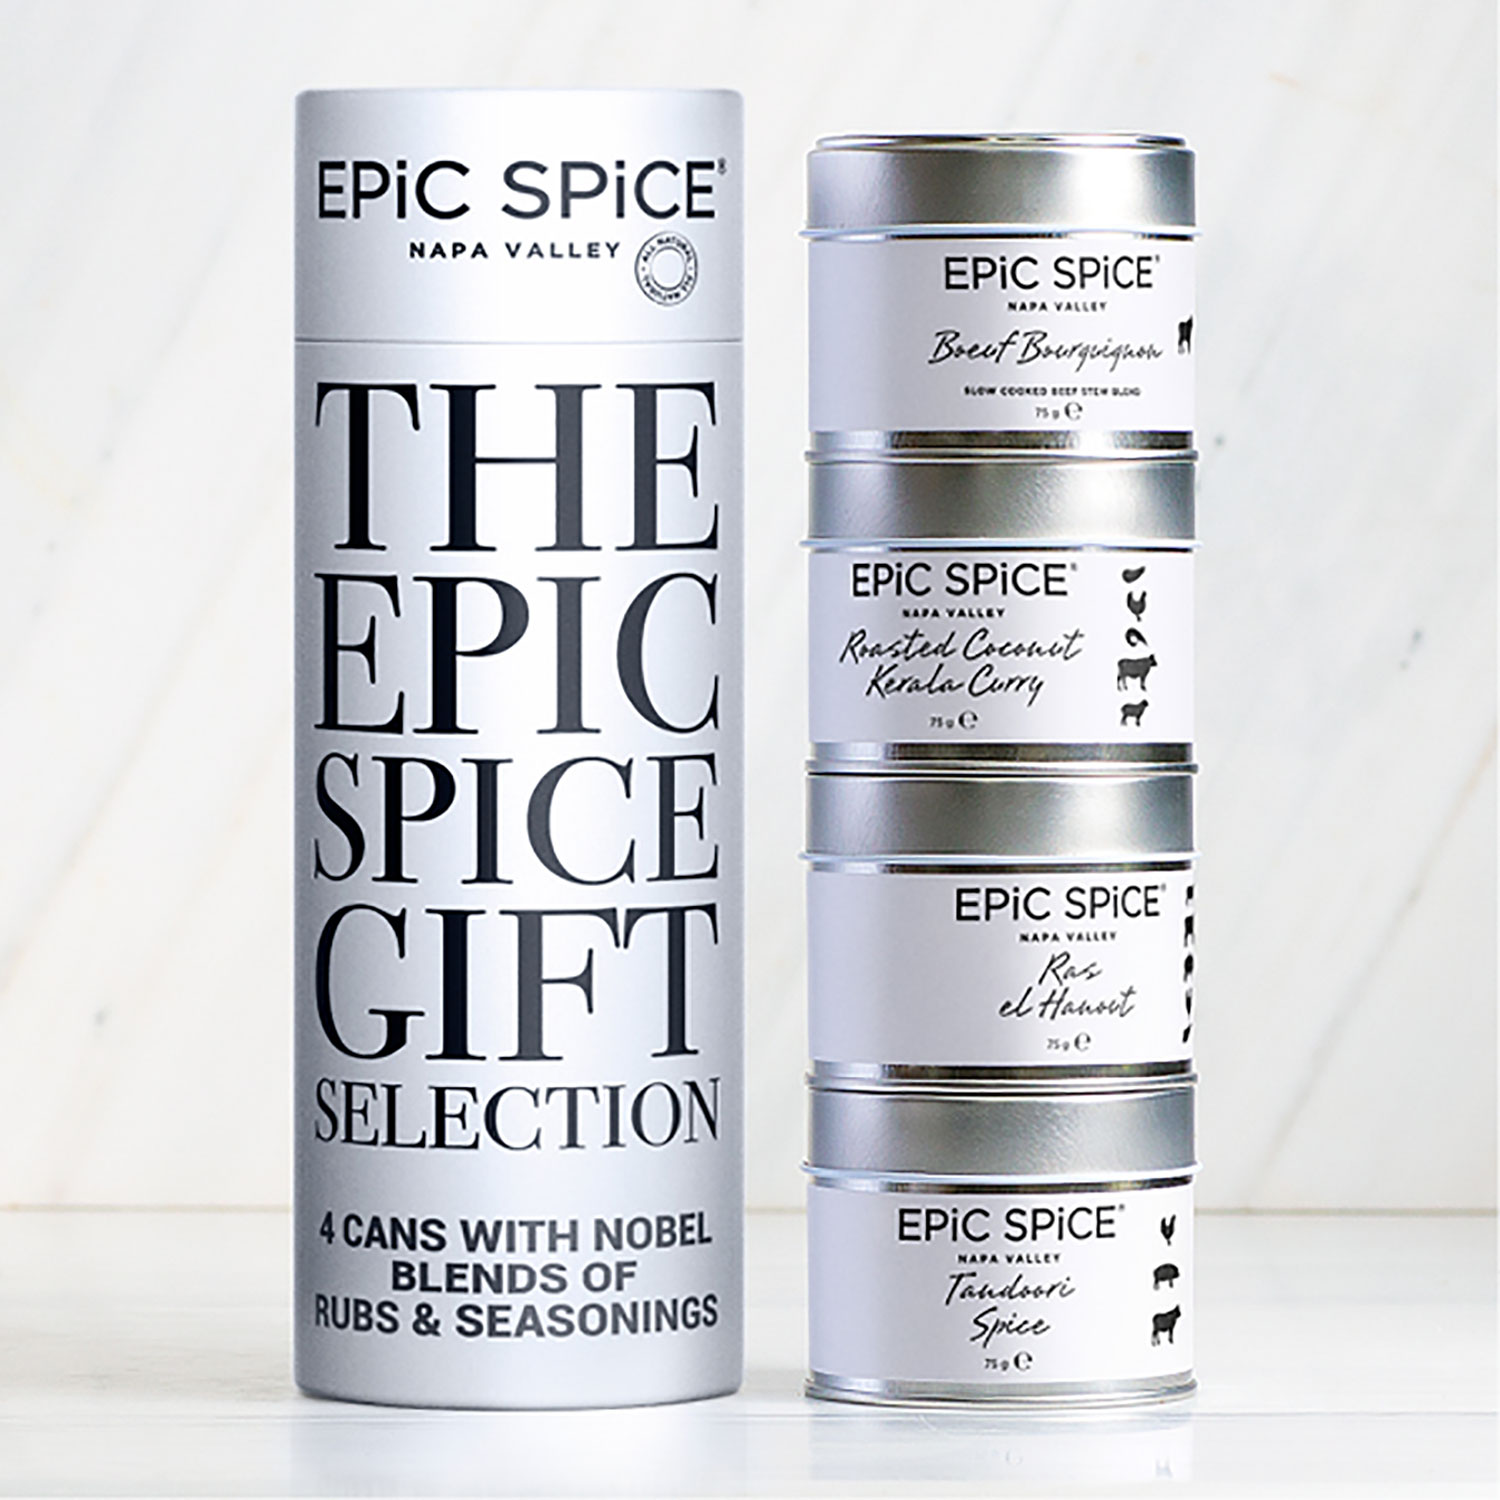 Epic Spice Casserole Connoisseur Presentbox